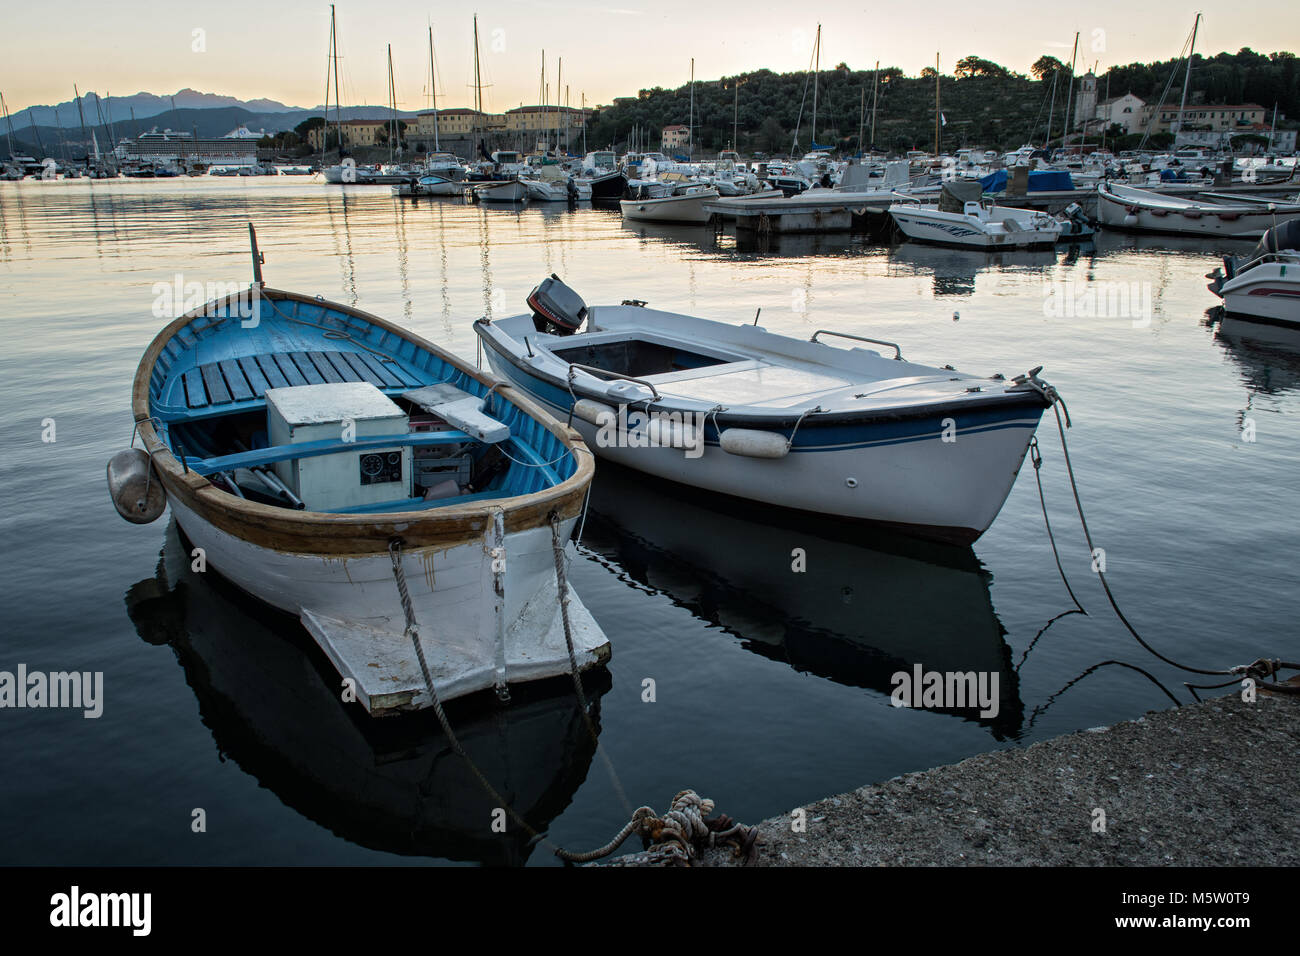 Boats in the port of Le Grazie at dawn, Porto Venere, Liguria, Italy Stock Photo